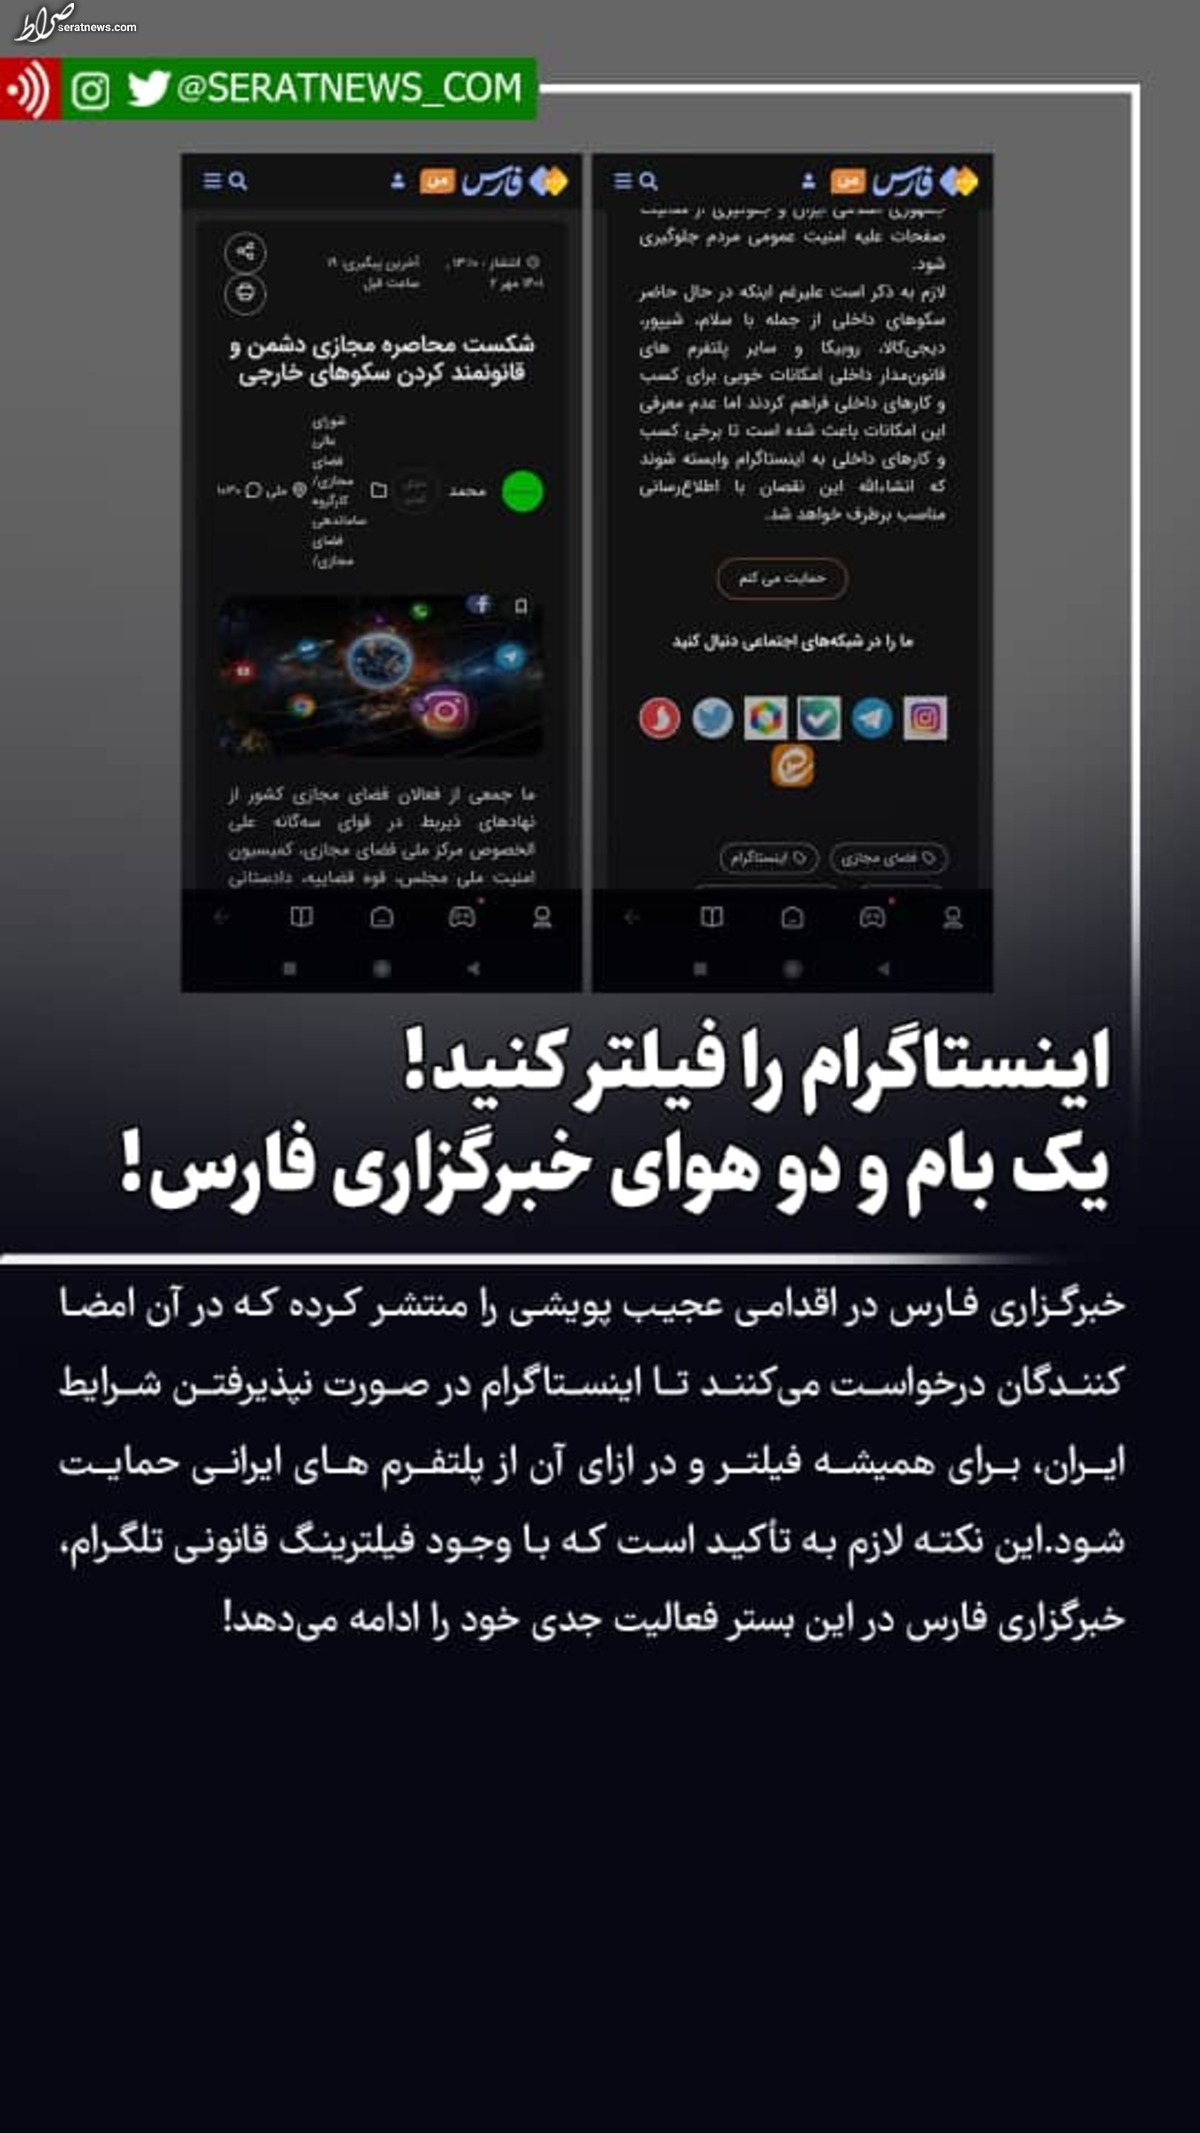 اینستاگرام را فیلتر کنید! / یک بام و دو هوای خبرگزاری فارس!